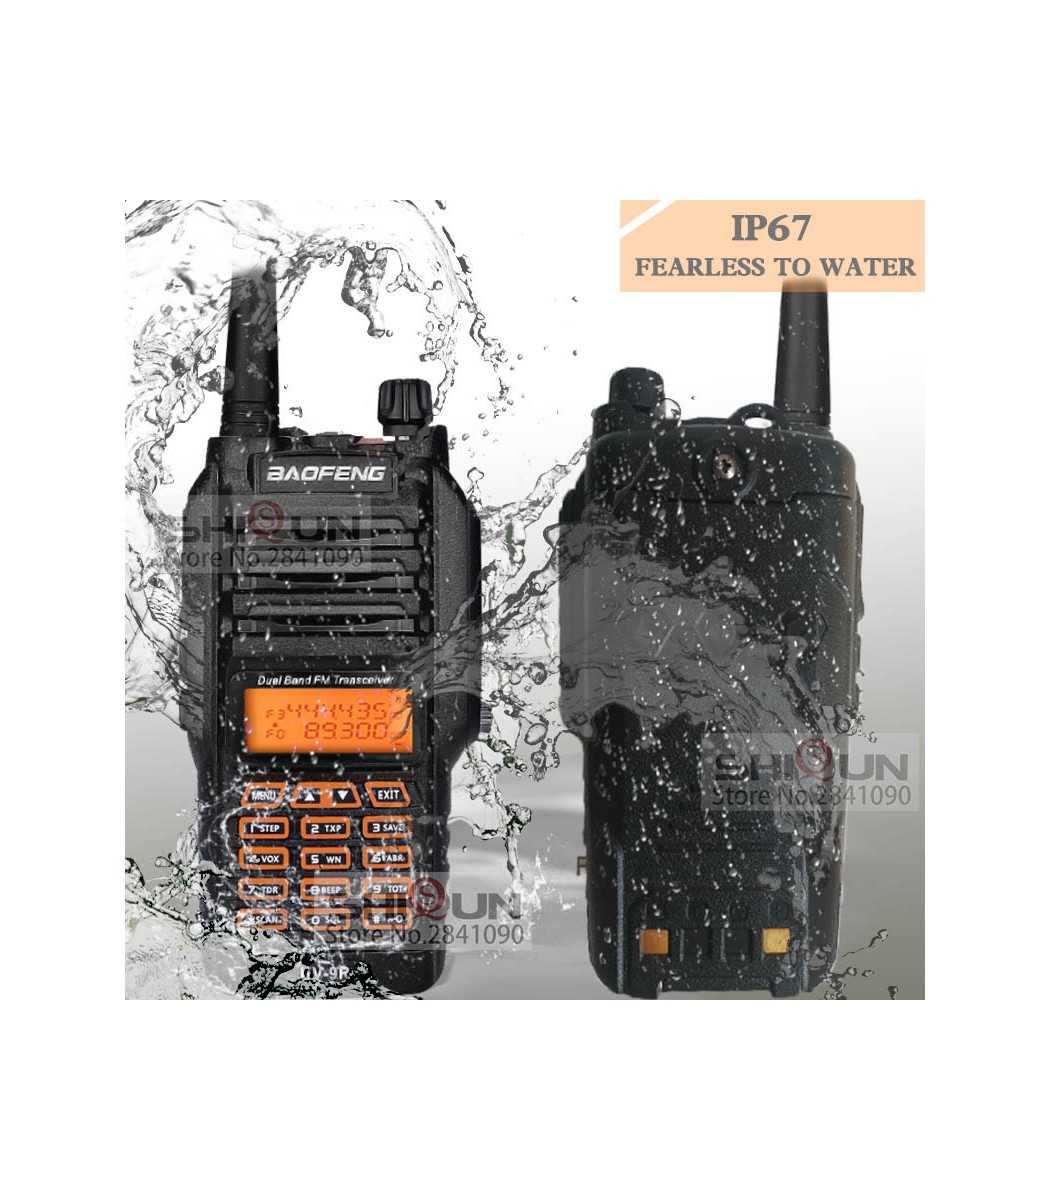 BAOFENG-UV-9R, Walkie Talkie IP67 Waterproof, Dual Band, 136-174 ...